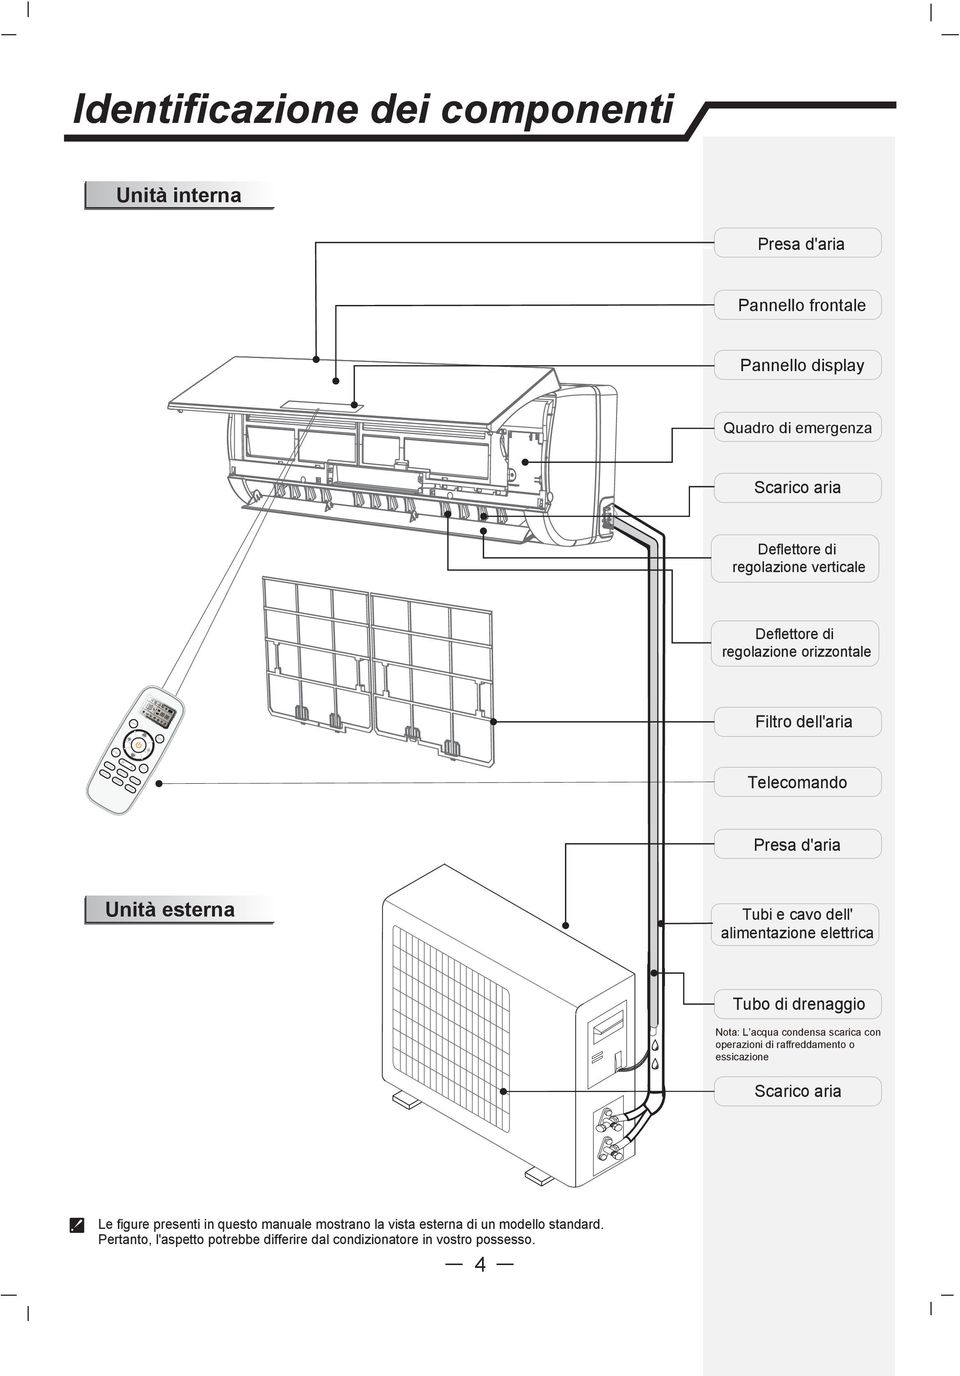 MODE Identificazione dei componenti Unità interna Presa d'aria Pannello frontale Pannello display Quadro di emergenza Scarico aria Deflettore di regolazione verticale